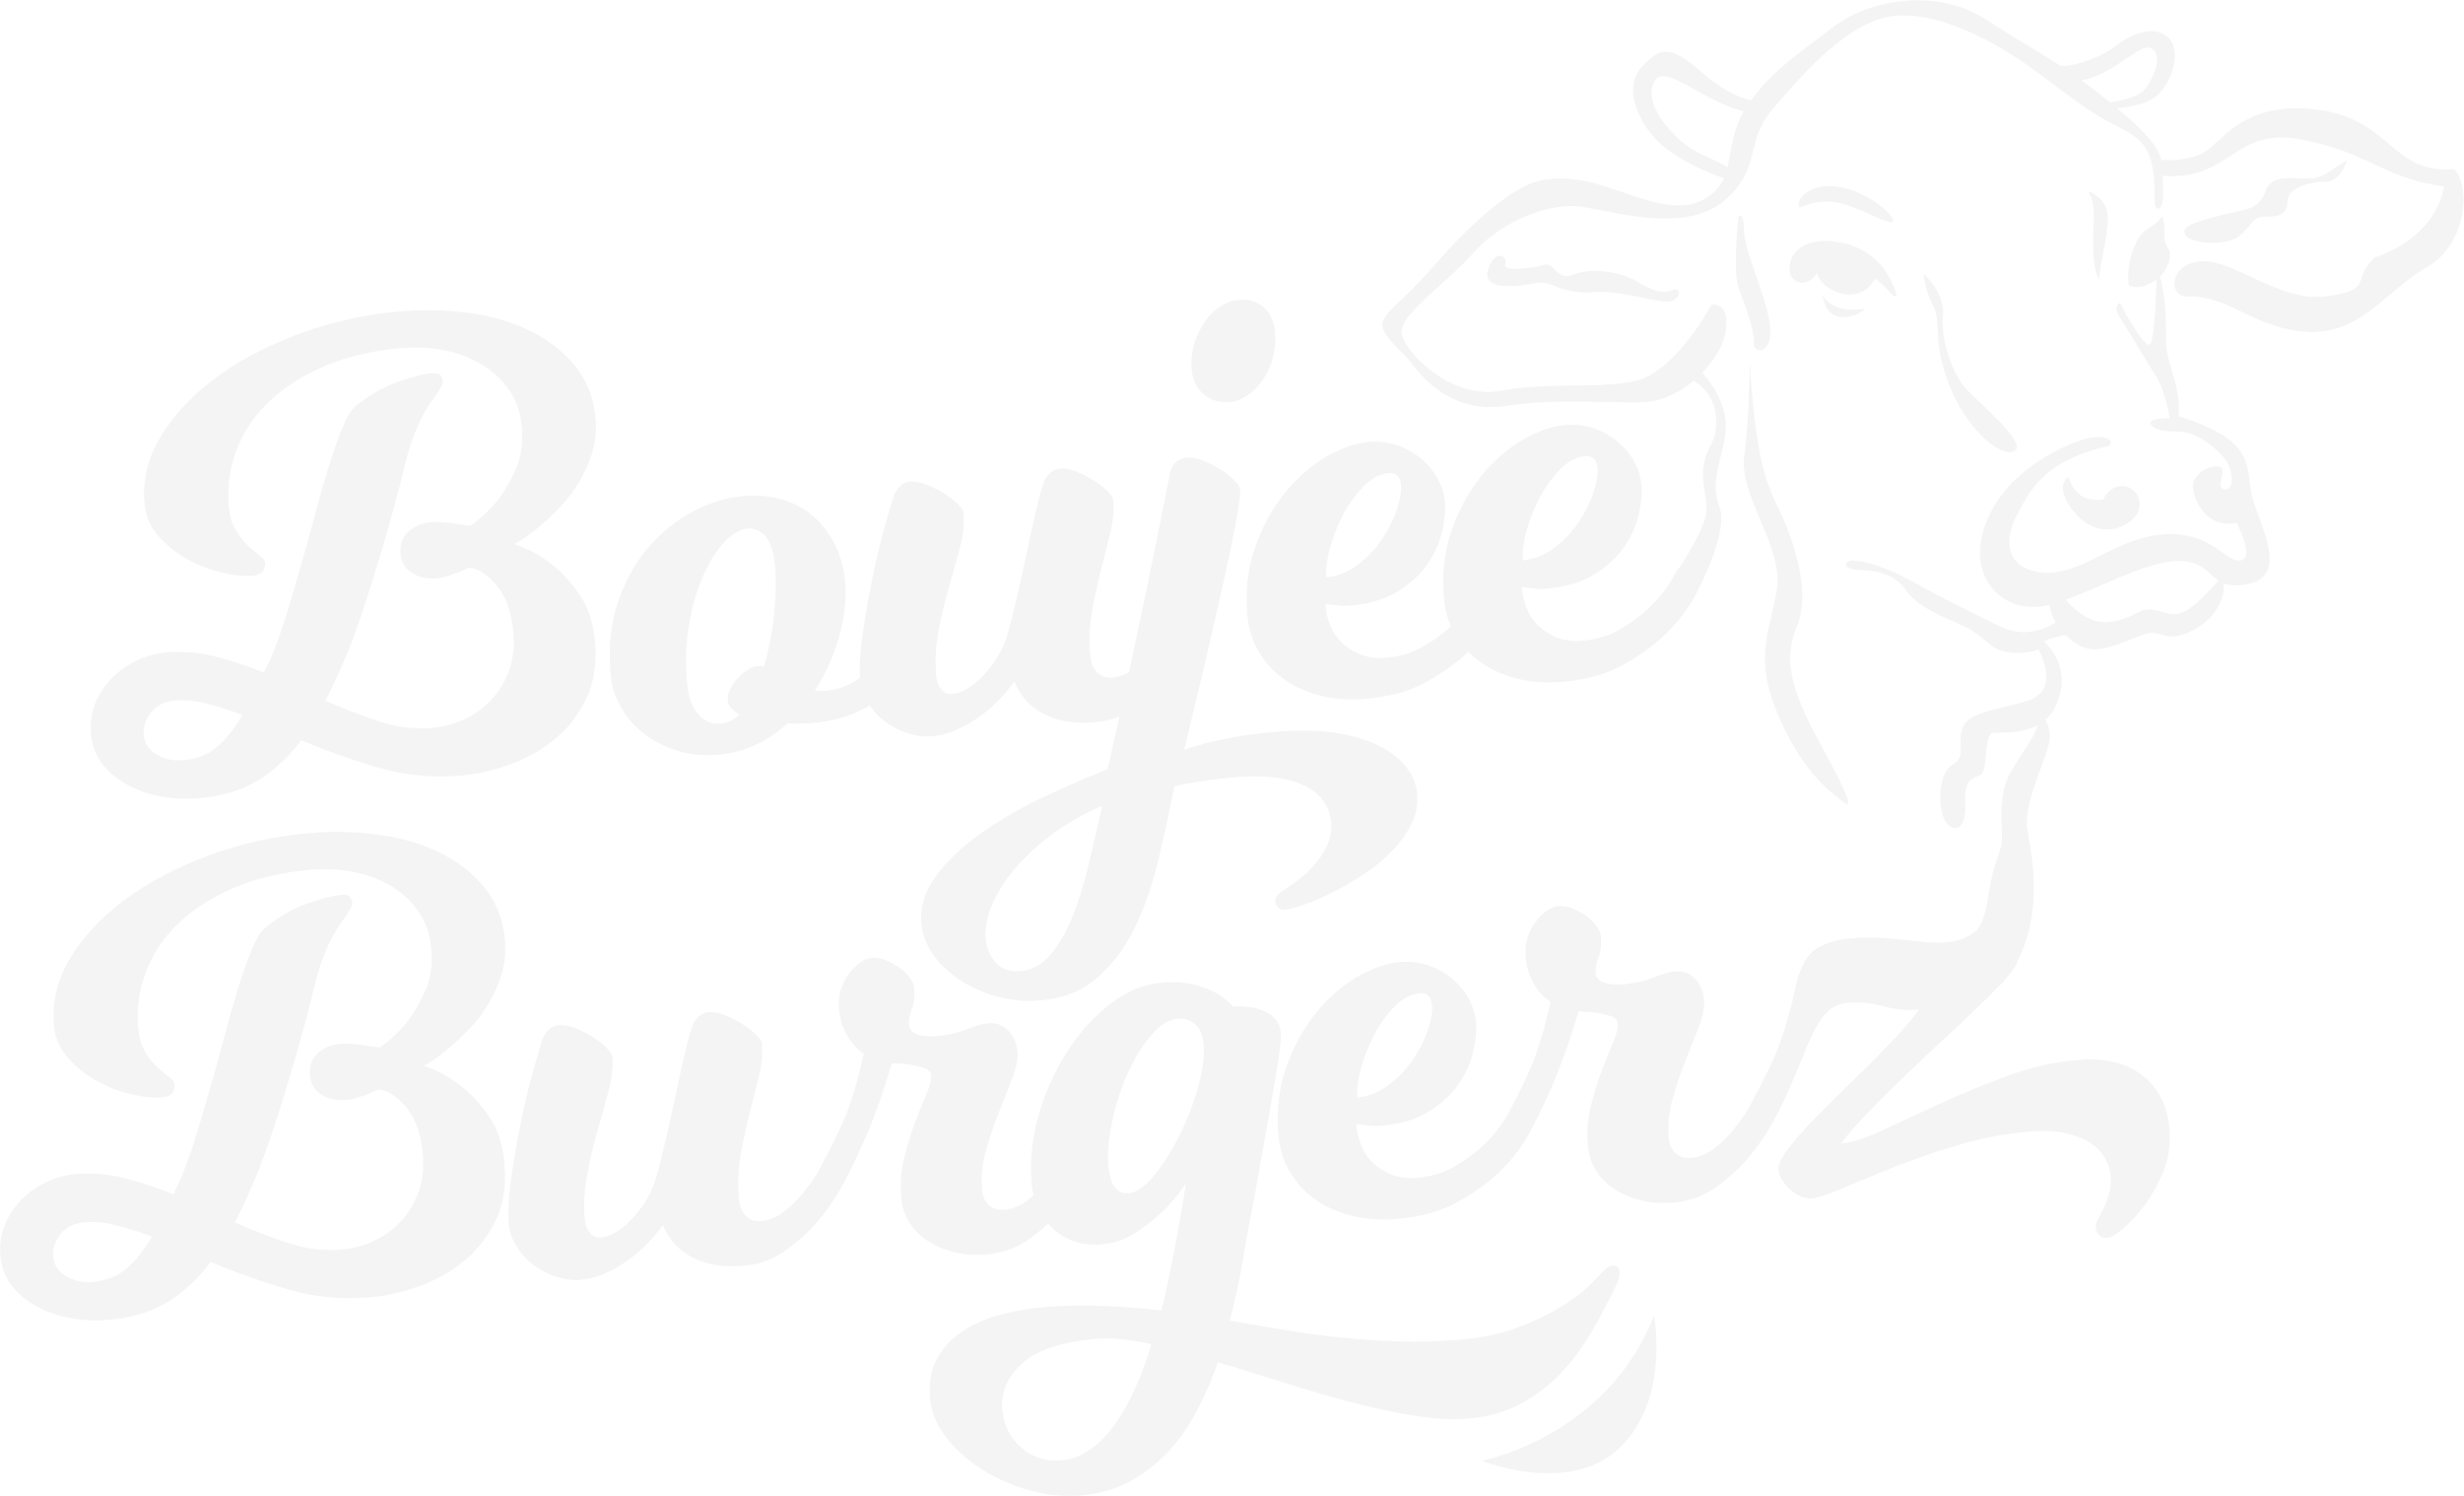 Boujee Burgerz - Las Vegas Best Wagyu On The Strip, Open Late